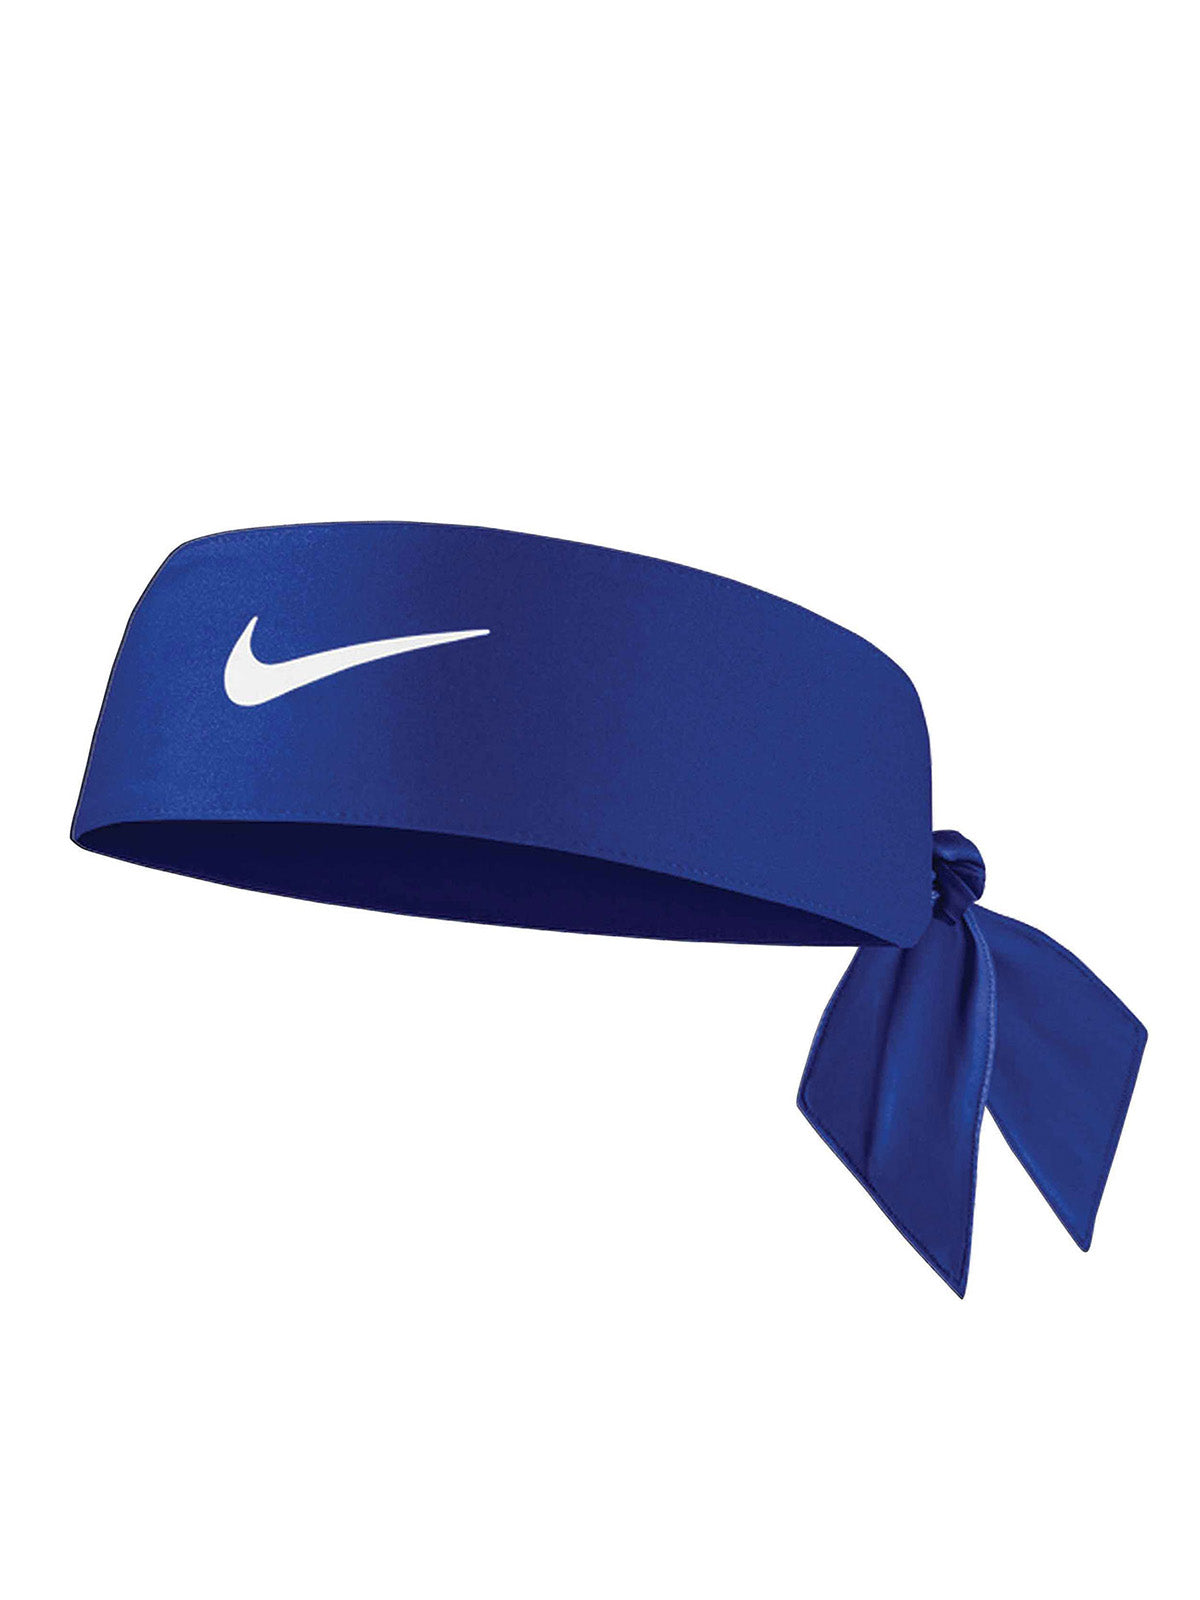 Fasce Unisex Nike - Dri-Fit Head Tie - Blu